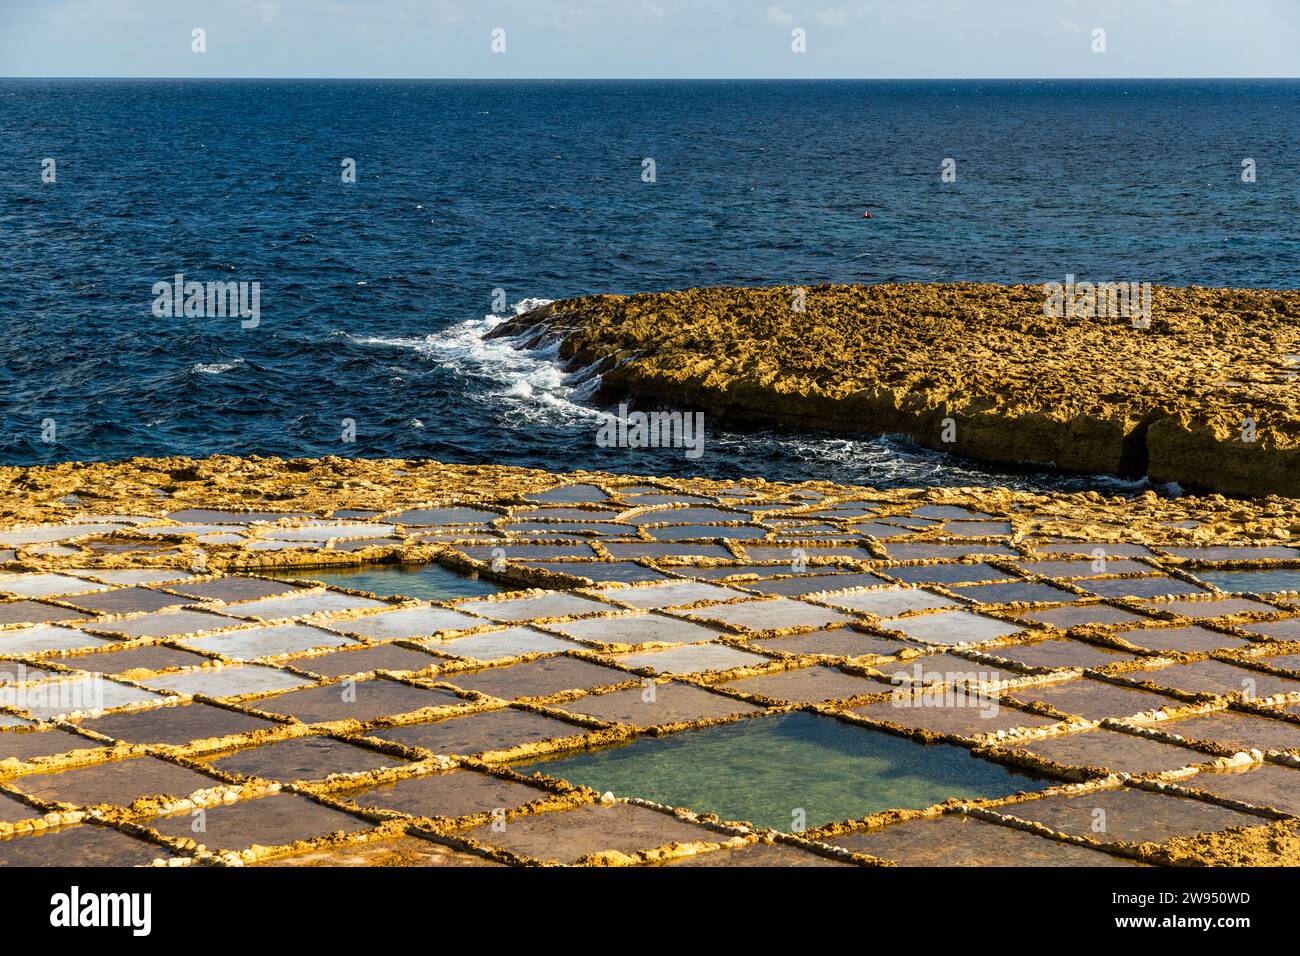 Baia di Xwejni sulla costa nord di Gozo, dove la famiglia Cini raccoglie sale da cinque generazioni. Le saline si estendono lungo la costa, dove l'acqua di mare, il vento e il sole rendono la baia un luogo ideale per estrarre il sale dal Mar Mediterraneo. Negozio di sale Leli tal-Melh a Xwejni, vicino a Marsalforn, Gozo, Malta Foto Stock